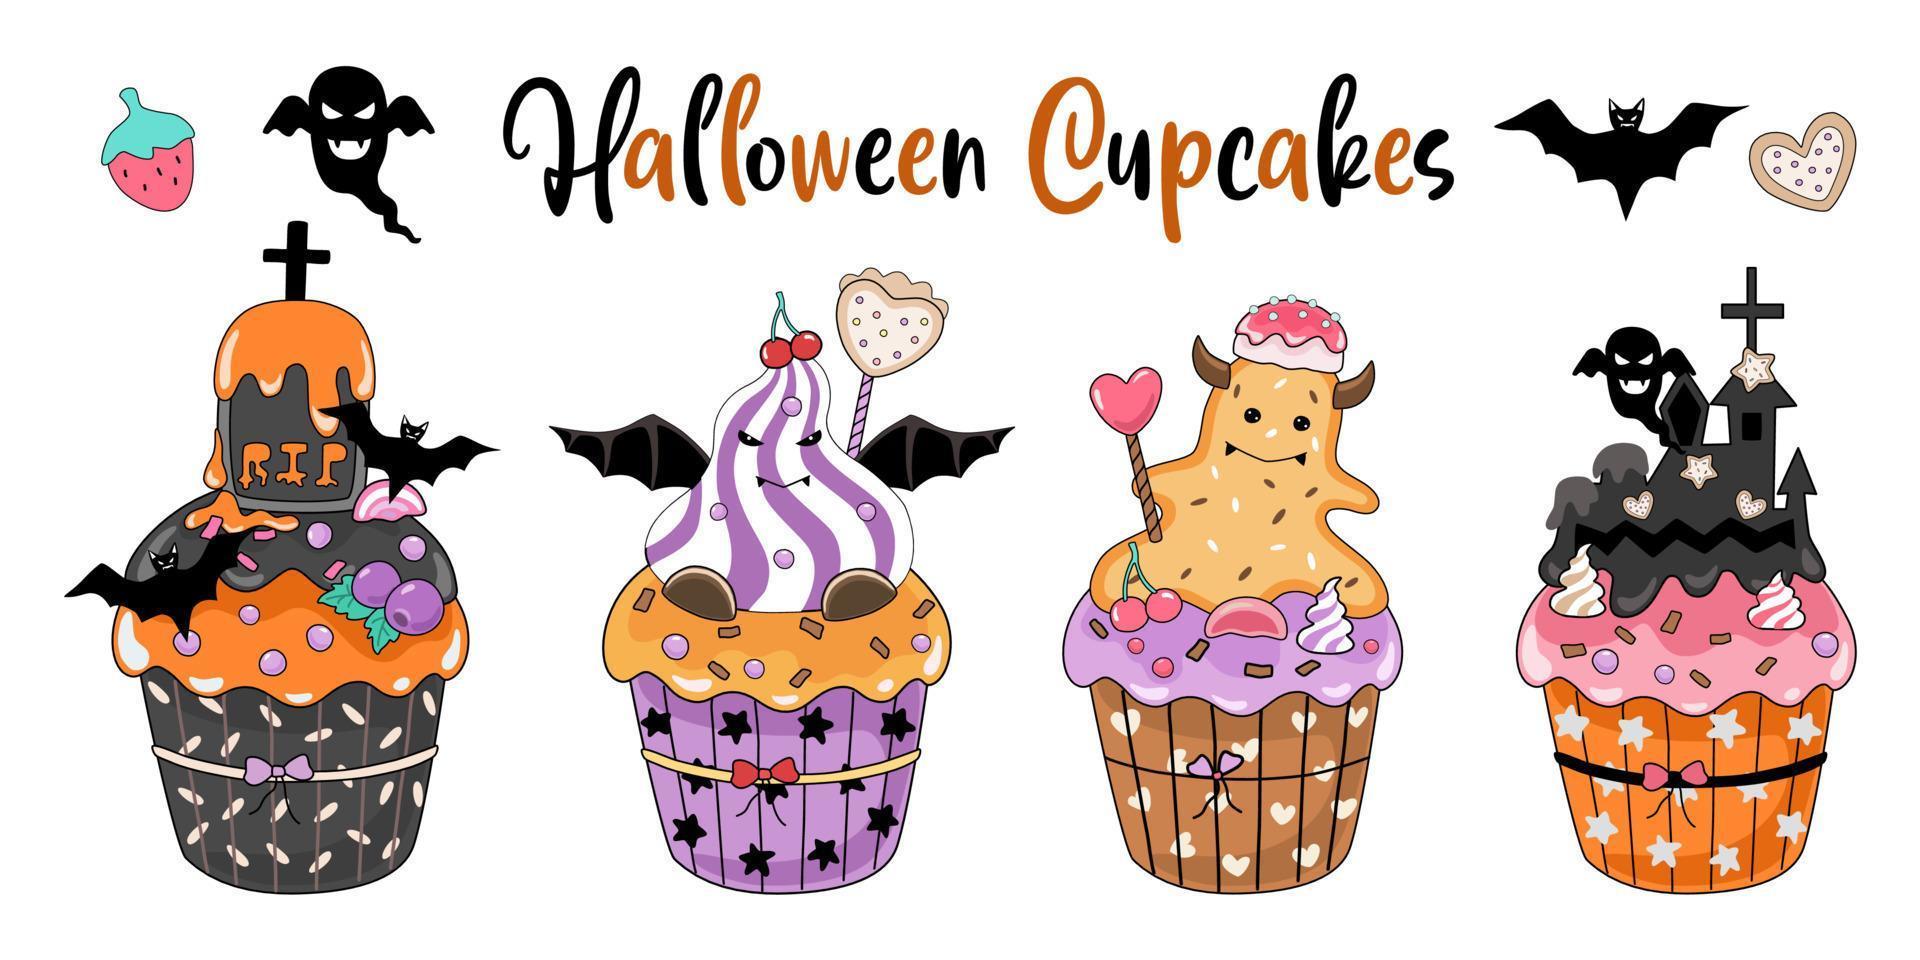 halloween cupcakes ontworpen in doodle stijl op witte achtergrond. geweldig voor het decoreren van halloween-thema's, kaarten, tshirtontwerpen, kussens, stickers, digitale prints en meer. vector